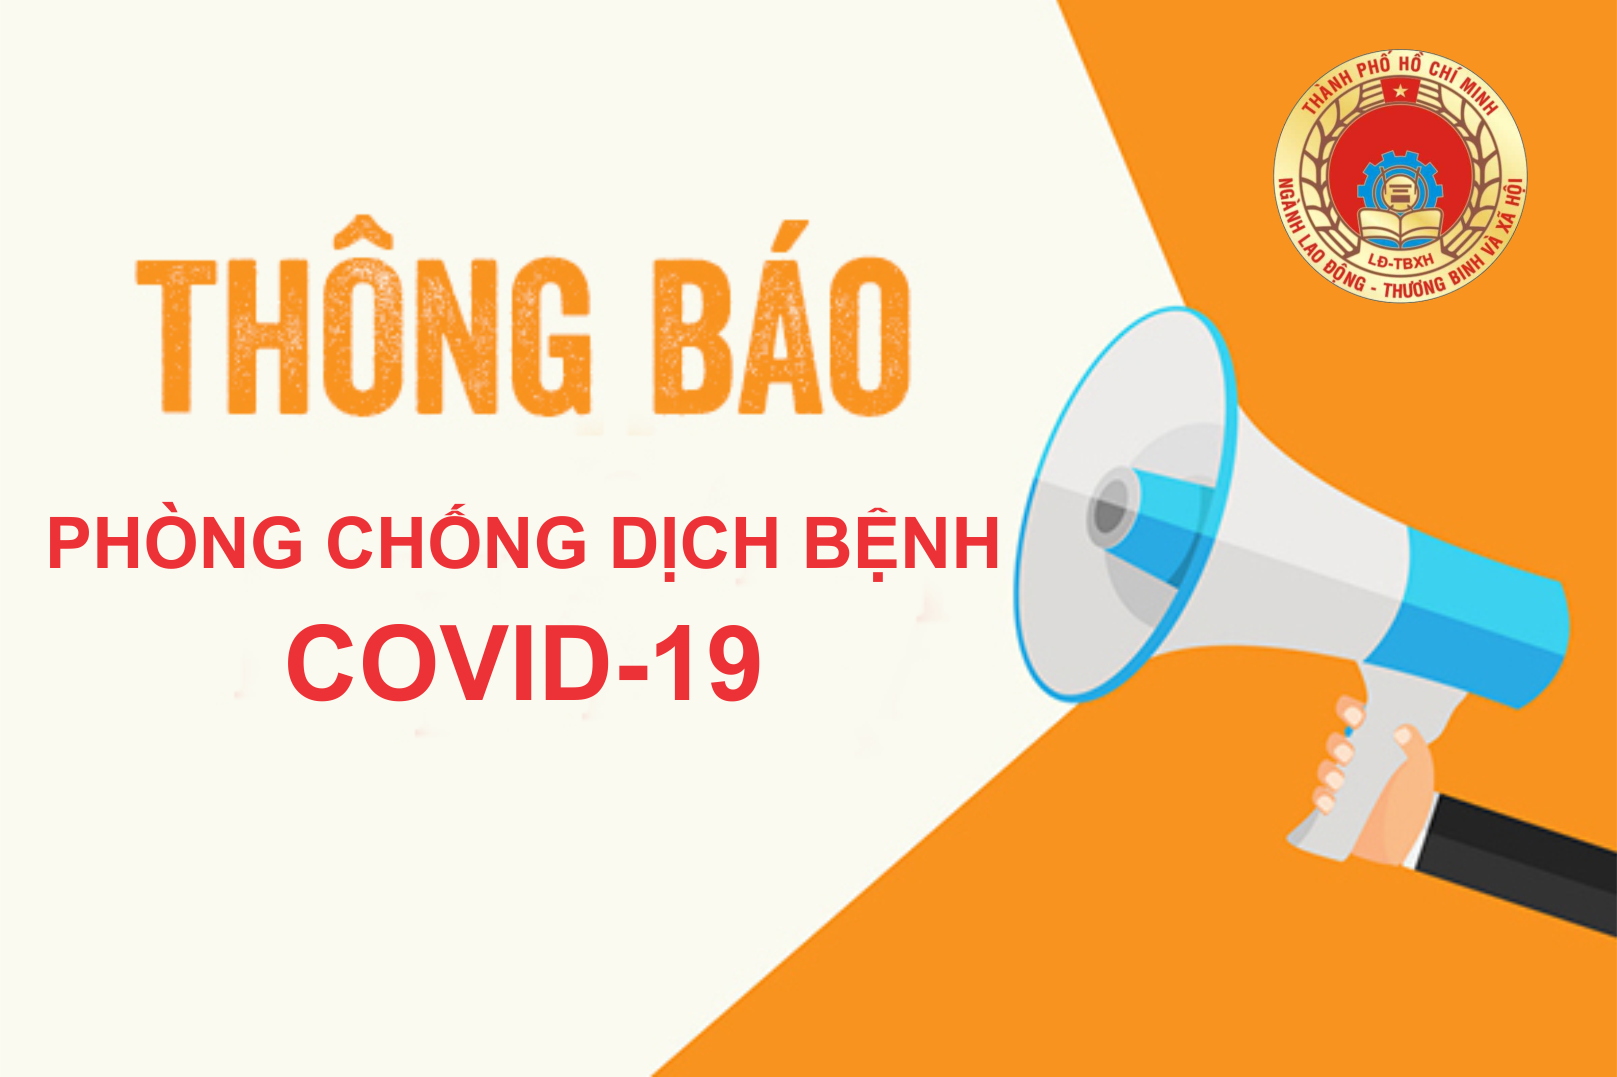 Triển khai Bộ tiêu chí đánh giá an toàn trong phòng, chống dịch COVID-19 đối với cơ sở GDNN trên địa bàn Thành phố Hồ Chí Minh